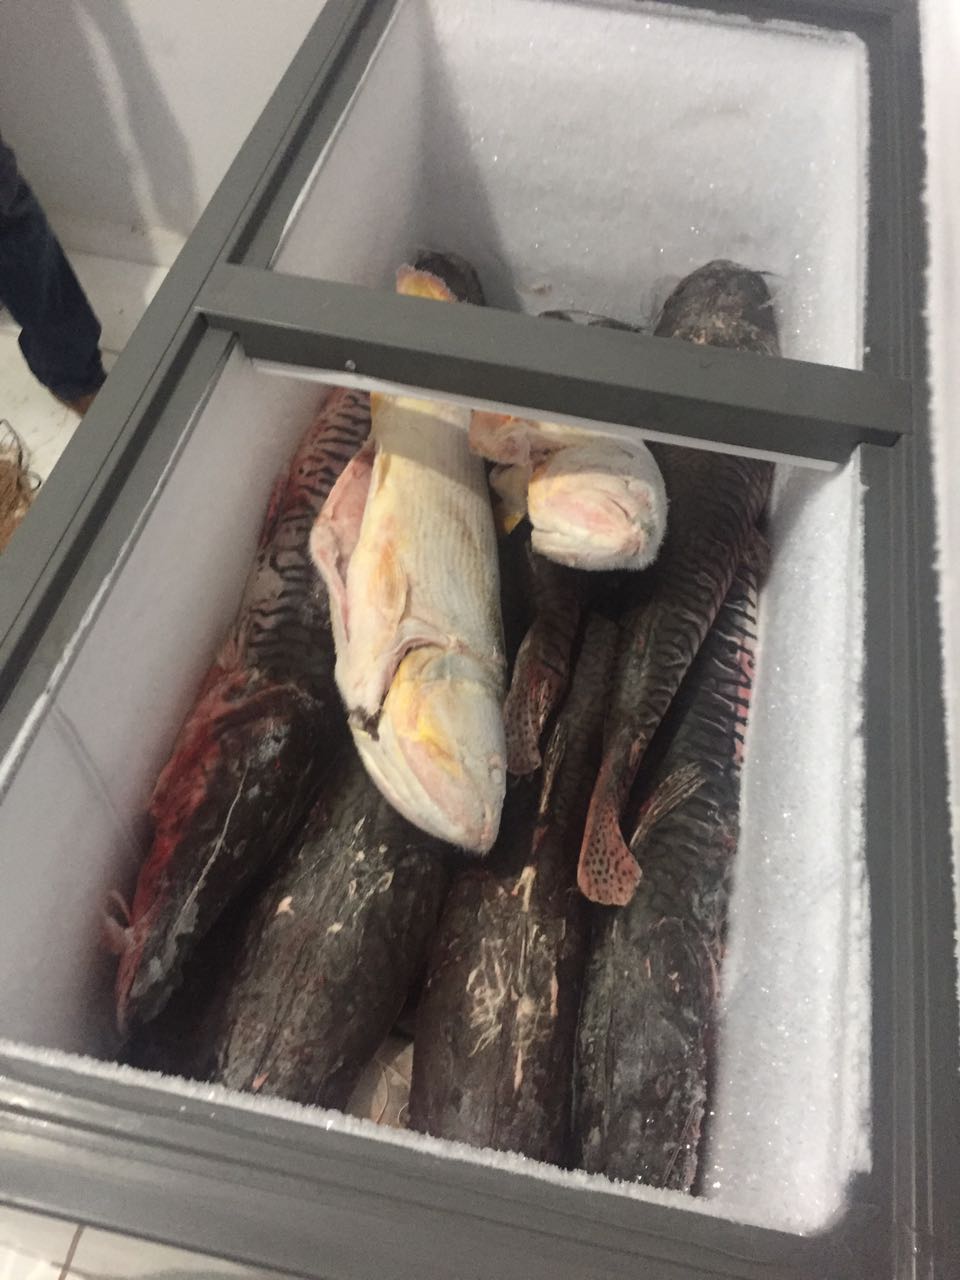 Peixes estavam acomodados em um freezer.  Foto: divulgação PM/MT.